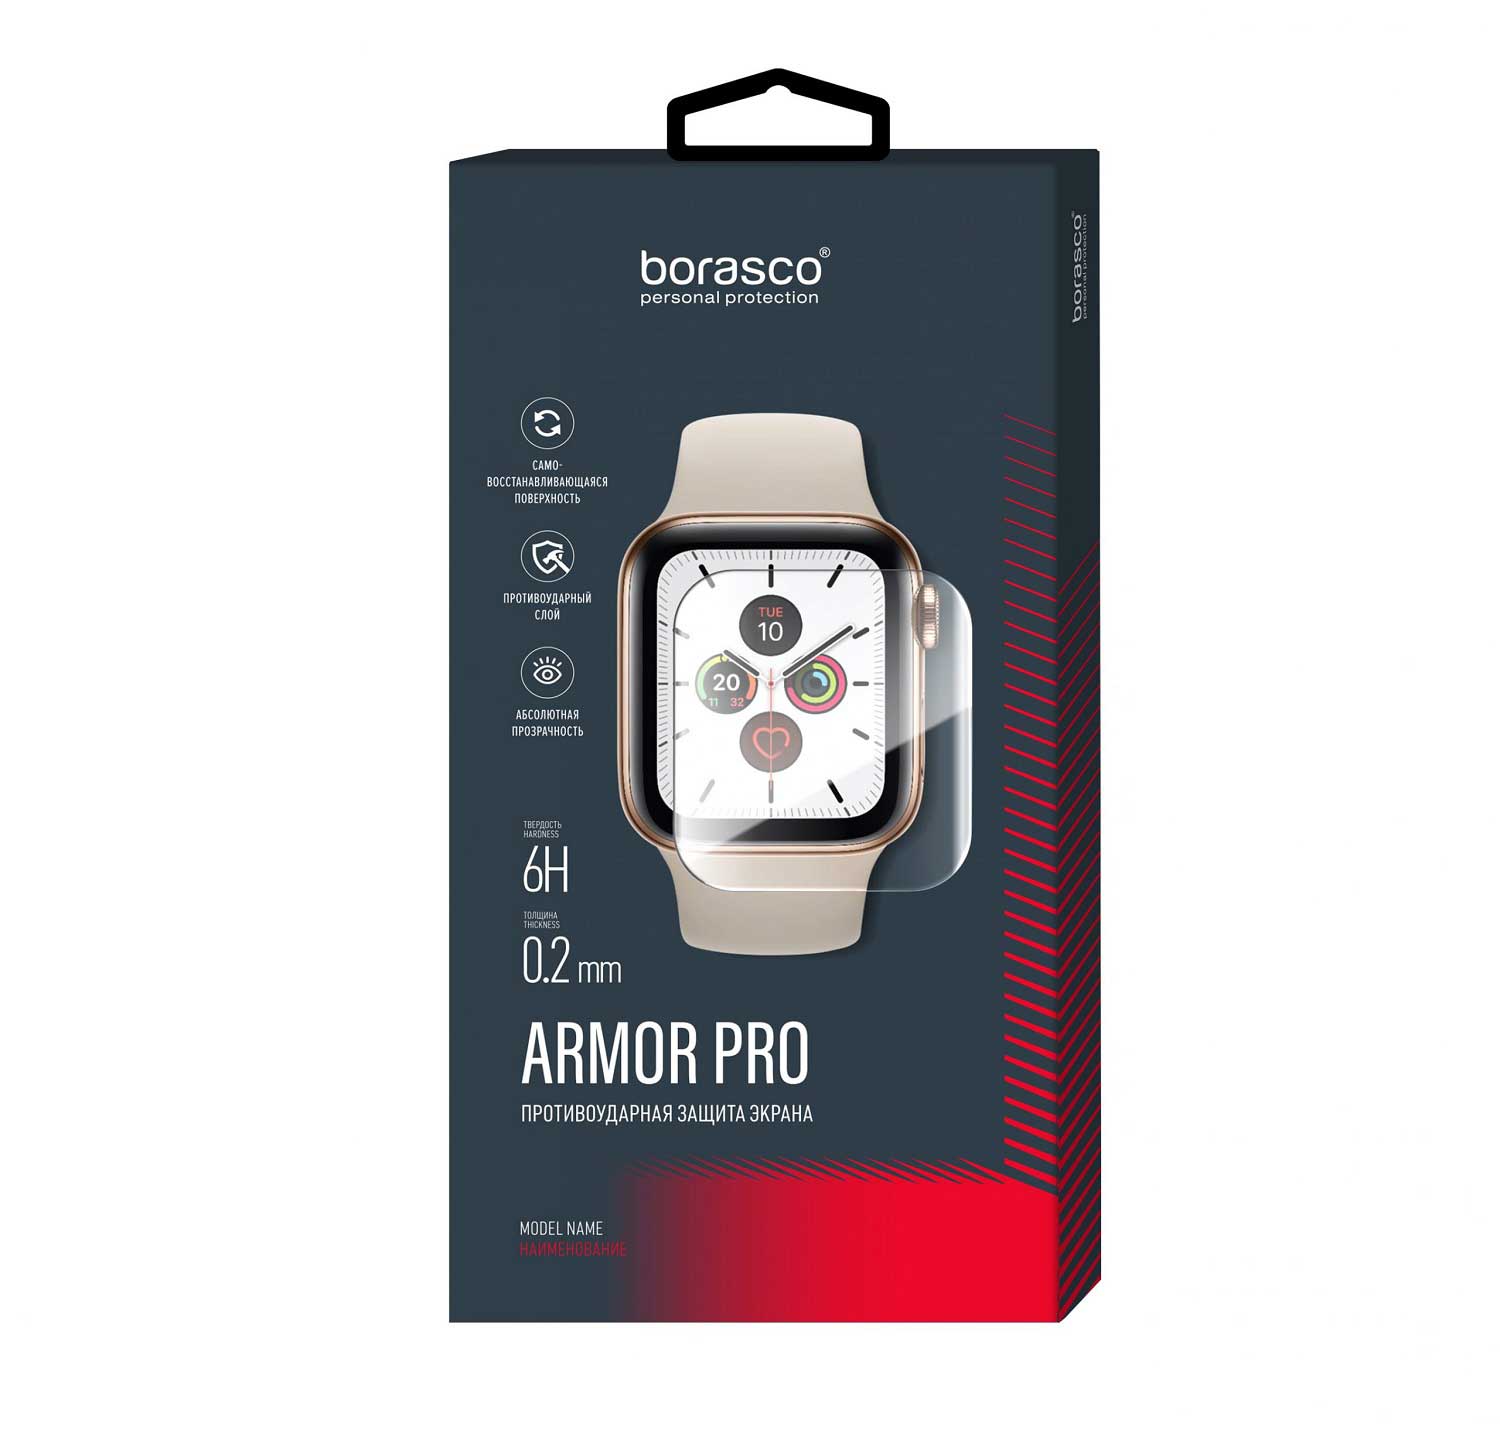 Защита экрана BoraSCO Armor Pro для Xiaomi Mi Band 6 защита экрана borasco armor pro для honor band 3